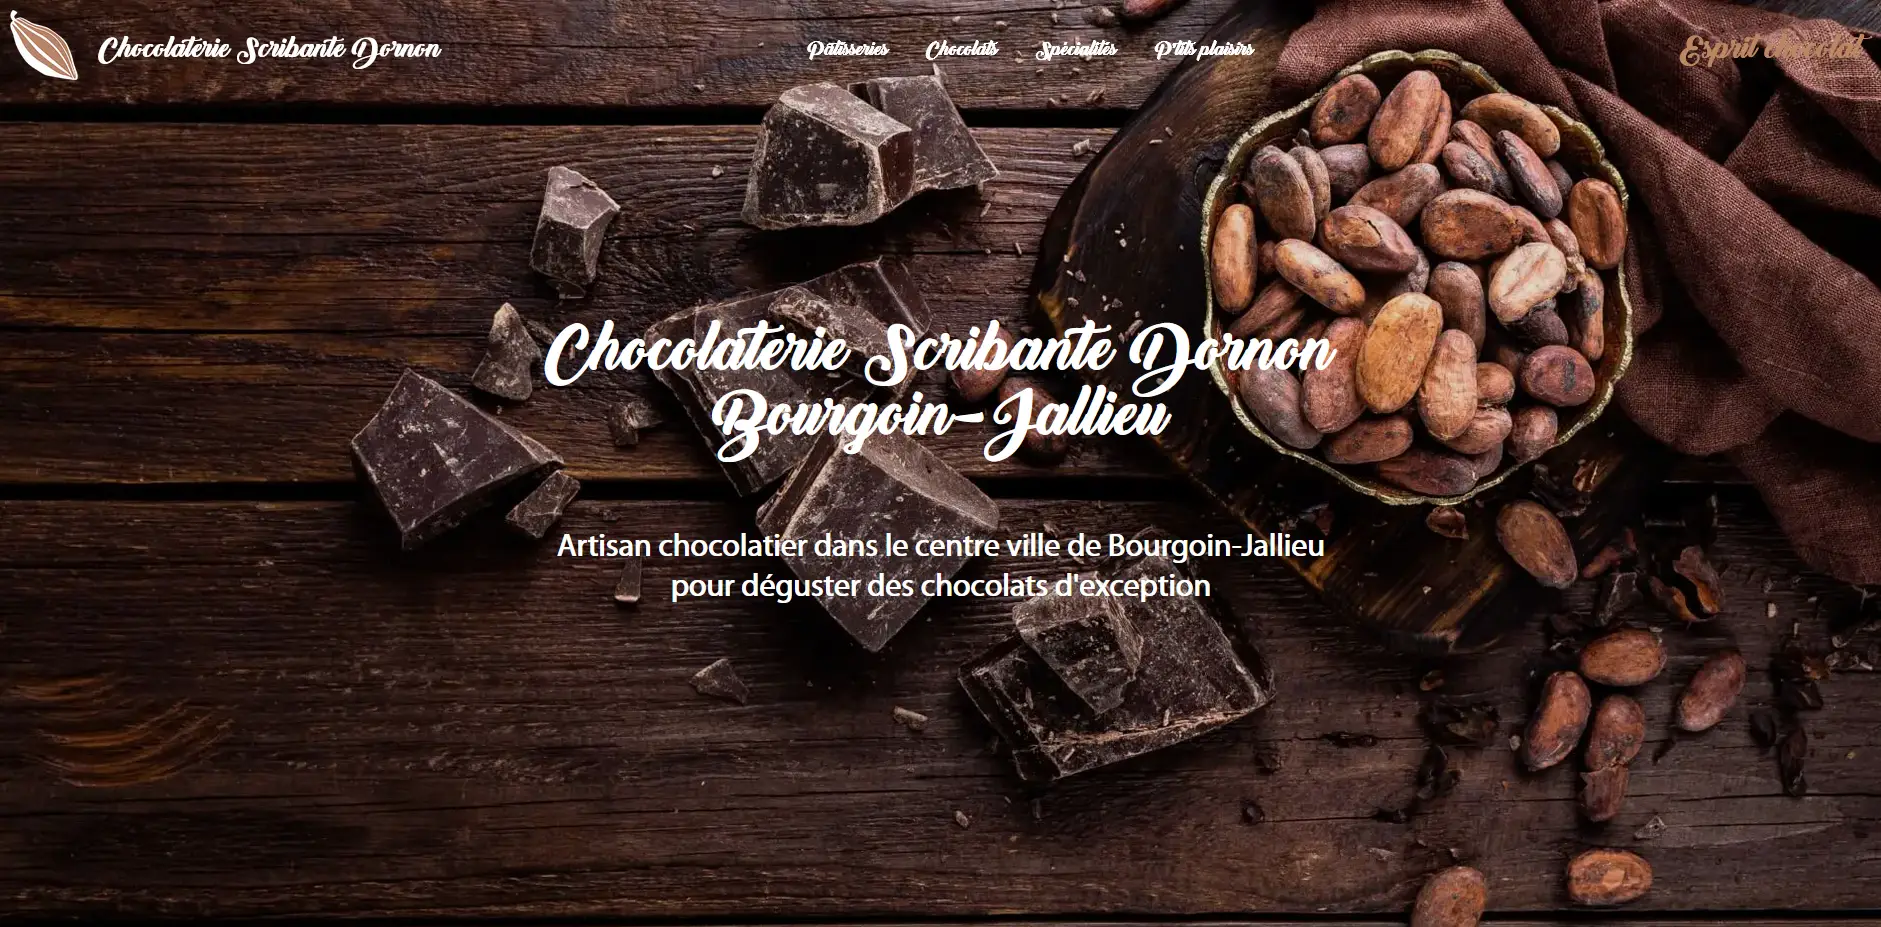 créer un site internet chocolatier, créer site internet patisserie, créer site internet boulangerie